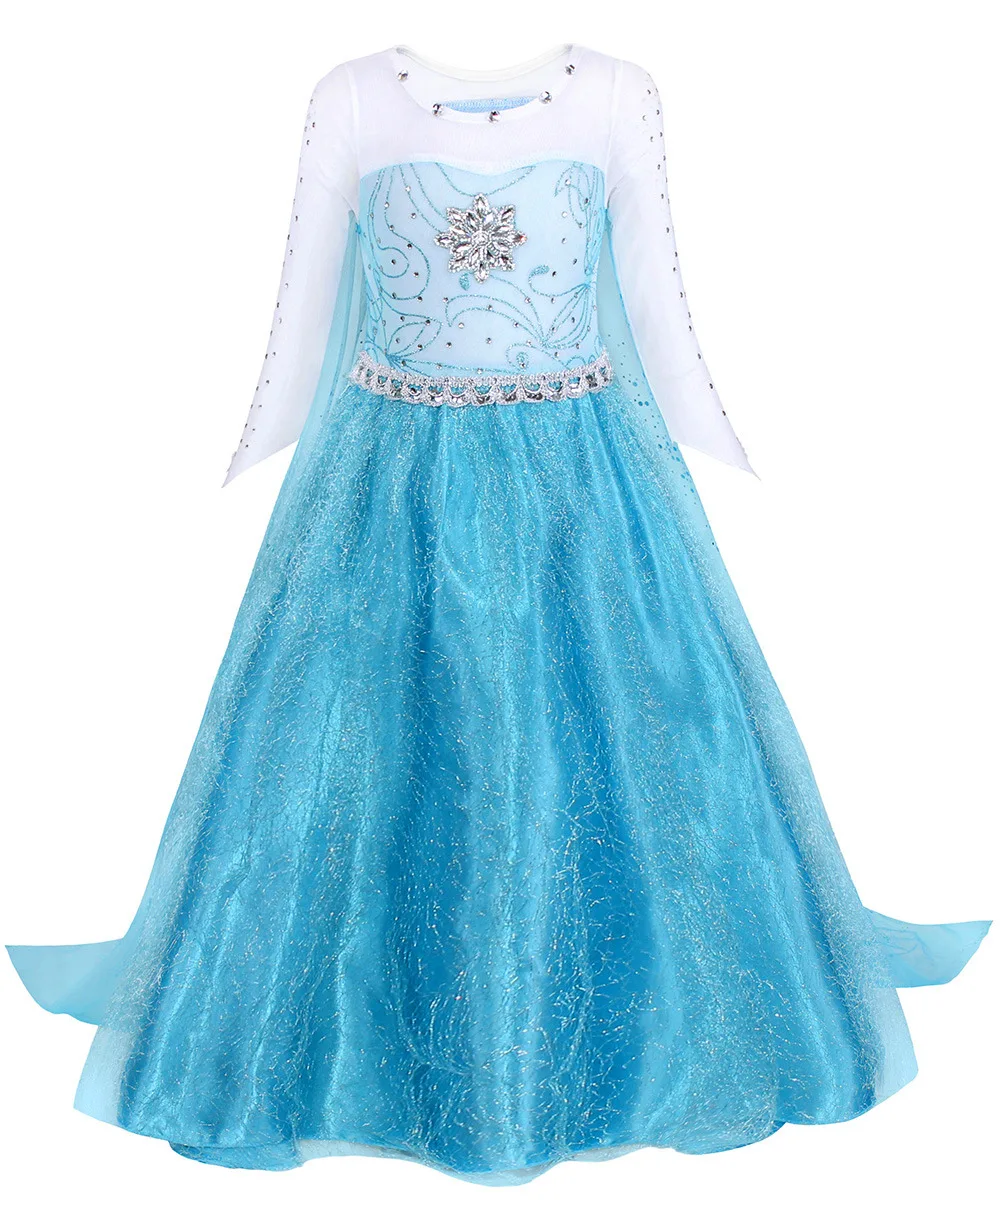 KEAIYOUHUO Платье принцессы для девочек 3-10 лет, костюм для косплея, блестки, Детские роскошные вечерние платья, подарок детям на День Рождения, бальные платья 3